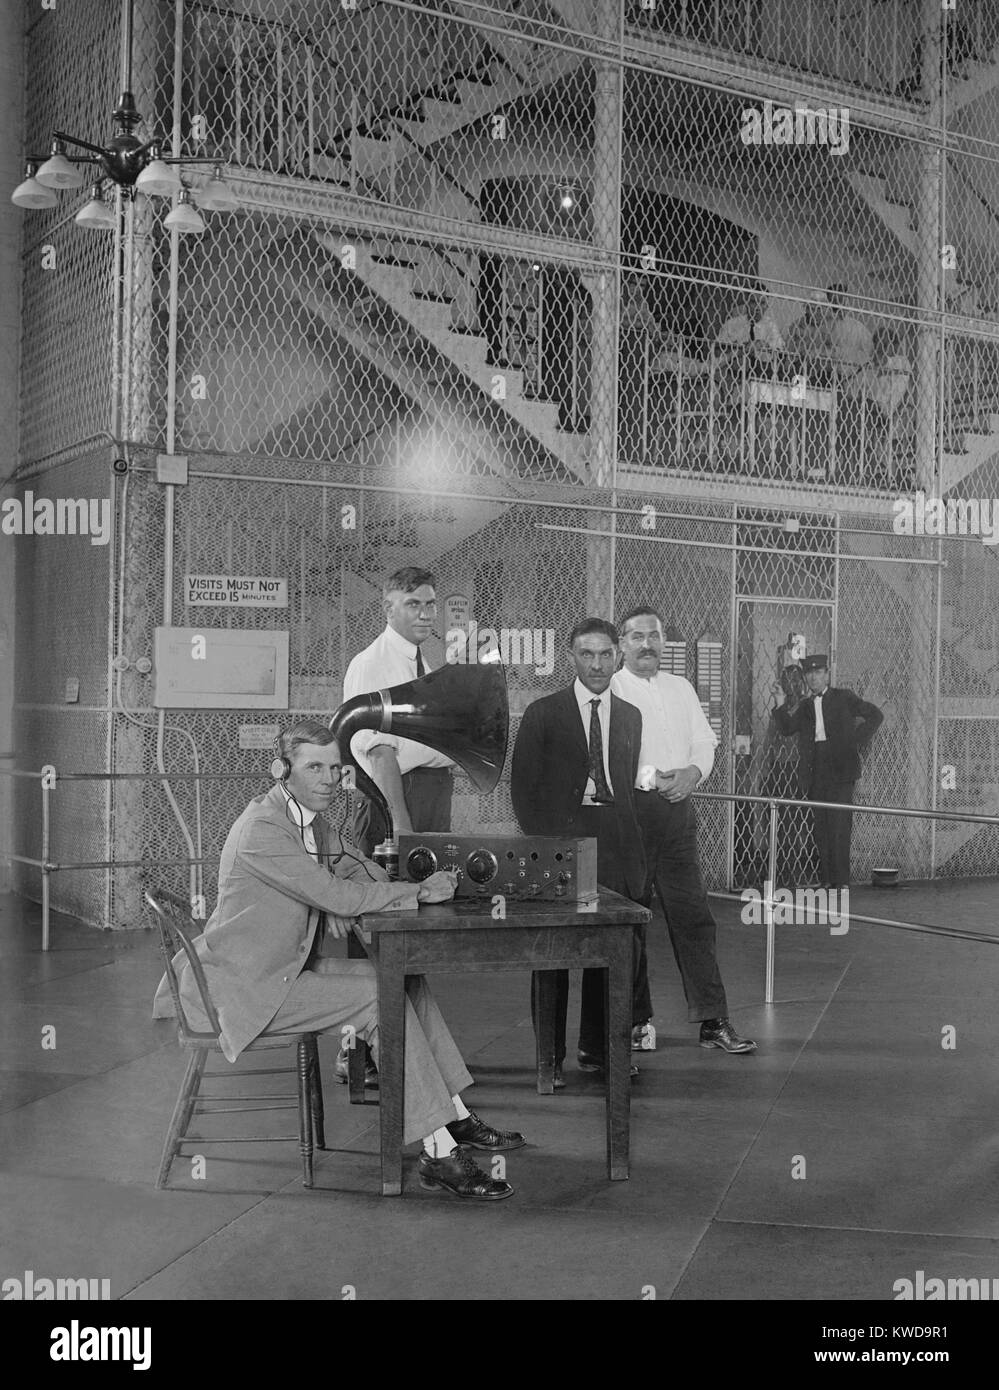 Gefangene in einem Gefängnis Washington D.C. Nähe hören zu einer Radiosendung im Jahre 1922. Ein Horn Lautsprecher Projekte der Sound (BSLOC 2016 10 56) Stockfoto